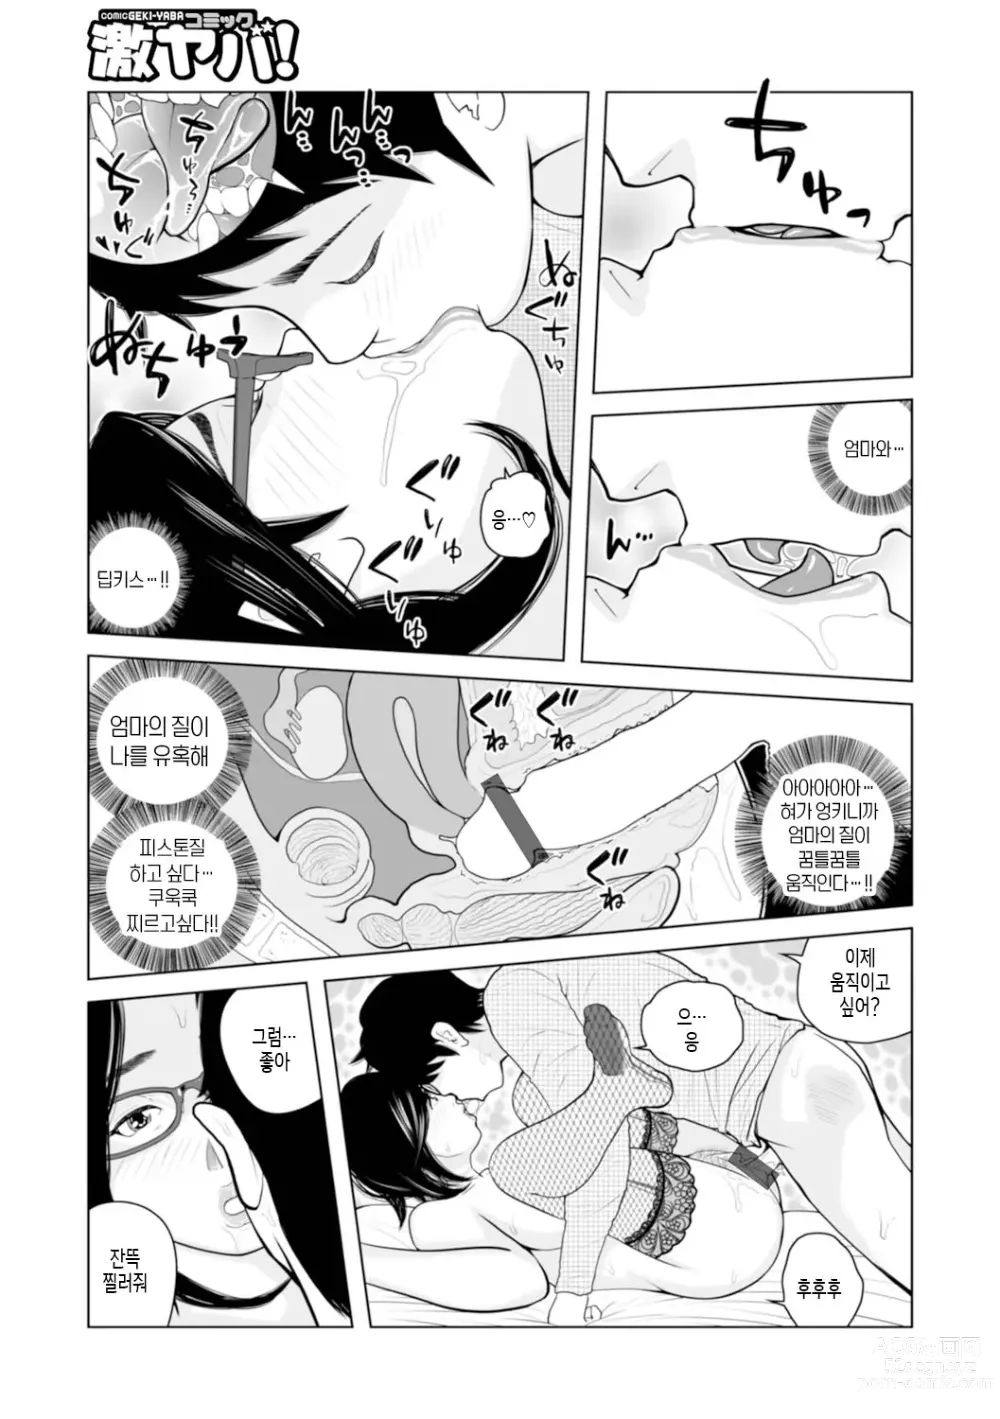 Page 91 of manga 엄마들... 임신시켜도 돼!? 제1권 중 일부